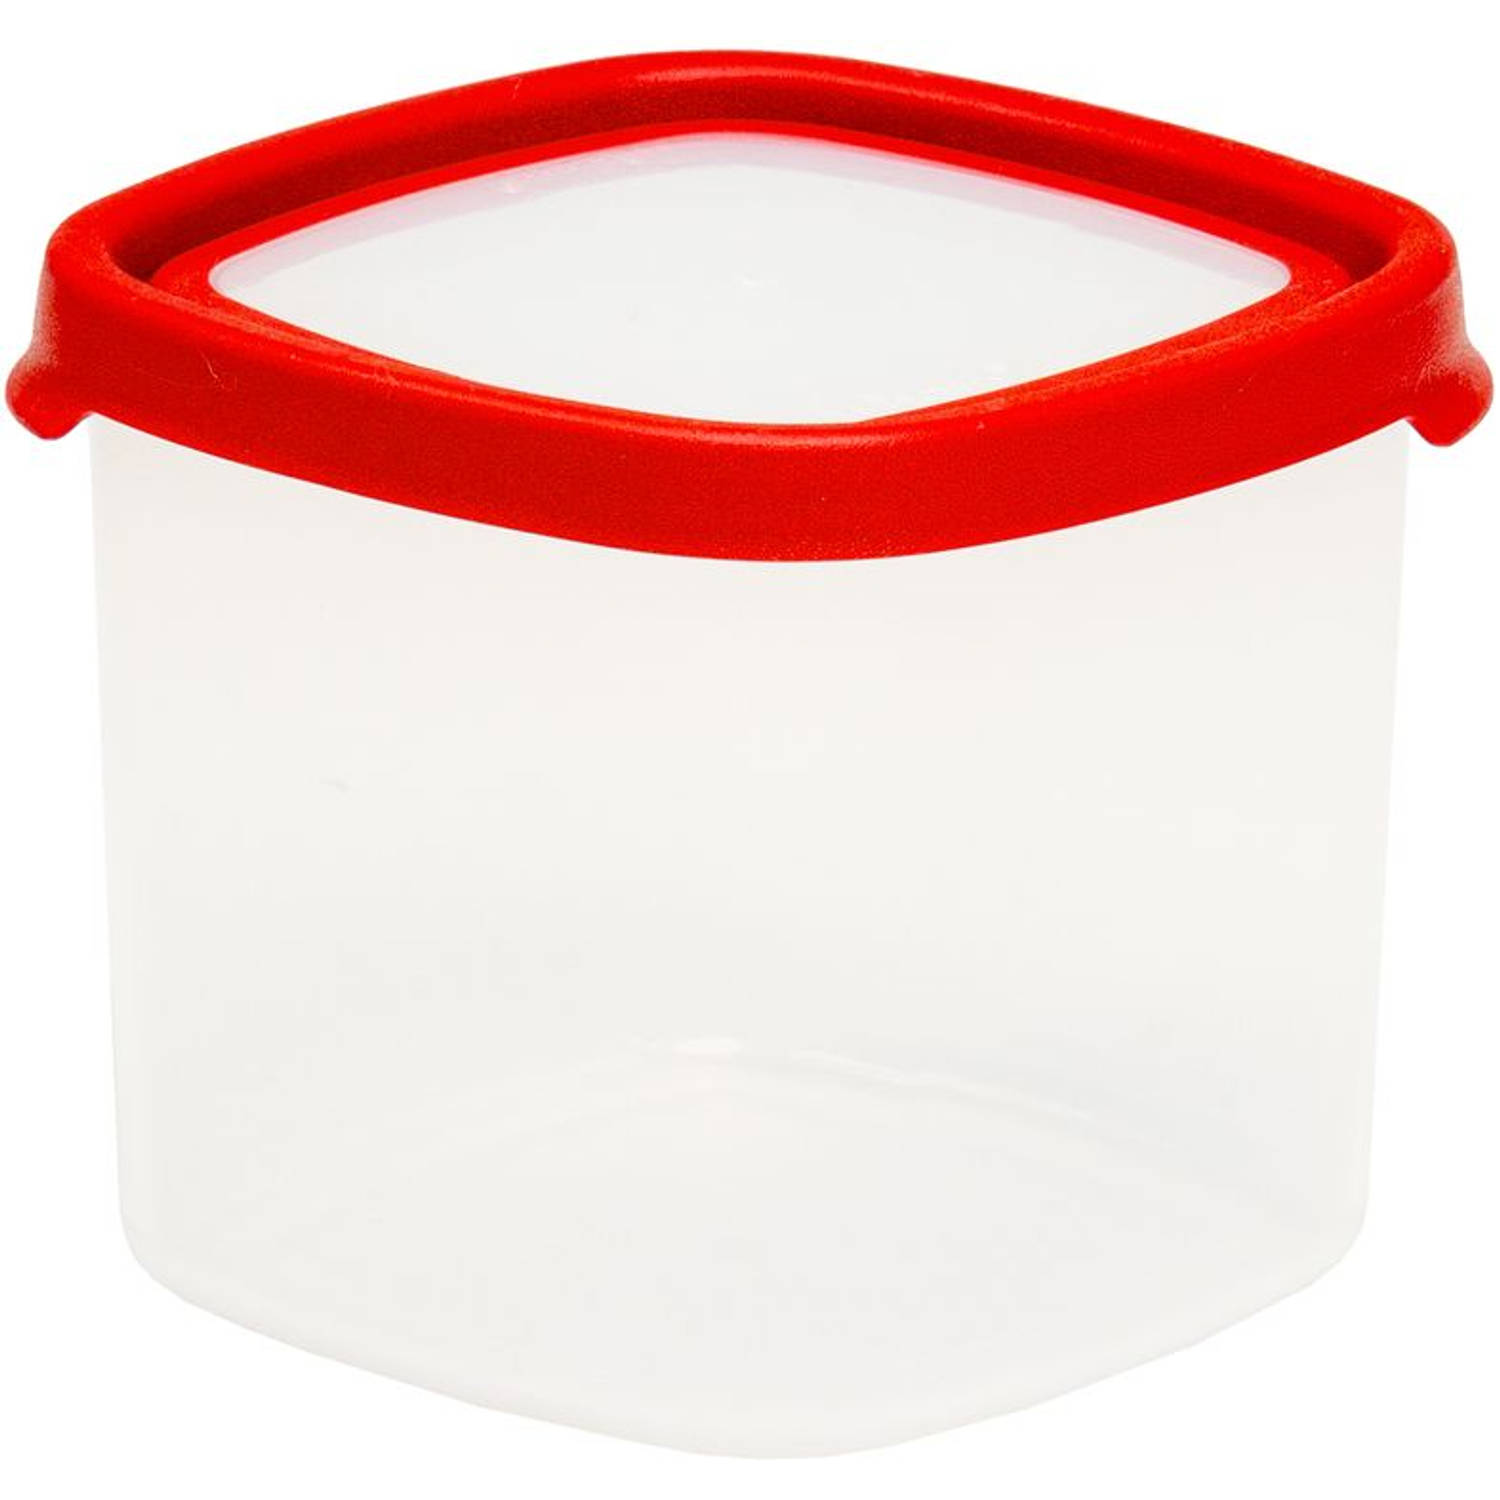 Wham - Opbergbox Seal It 1,7 liter Set van 3 Stuks - Polypropyleen - Transparant